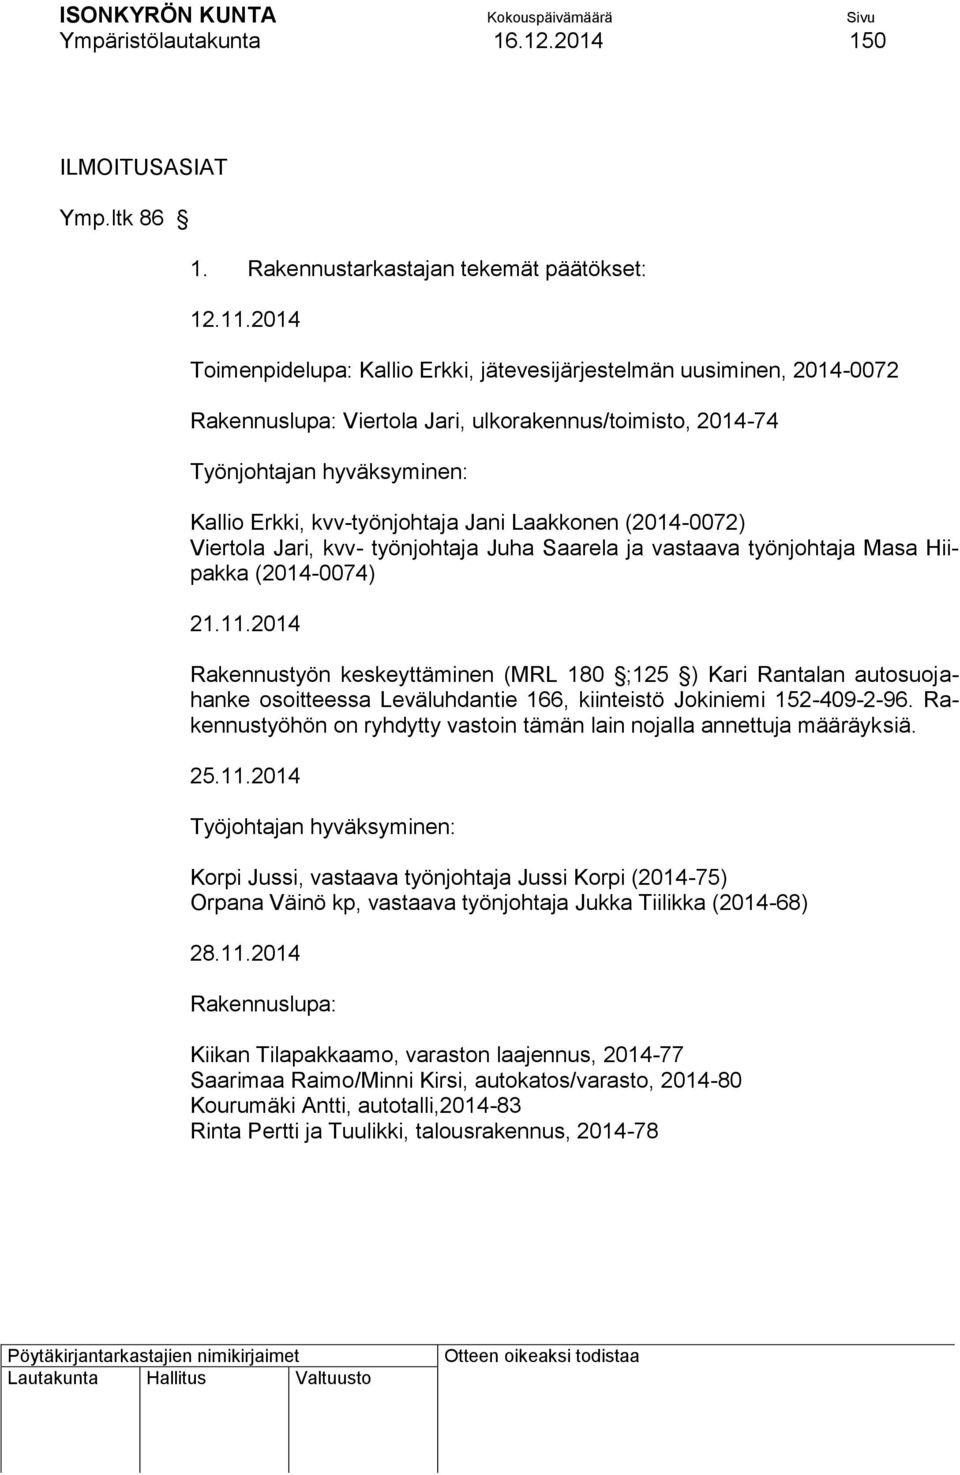 Laakkonen (2014-0072) Viertola Jari, kvv- työnjohtaja Juha Saarela ja vastaava työnjohtaja Masa Hiipakka (2014-0074) 21.11.